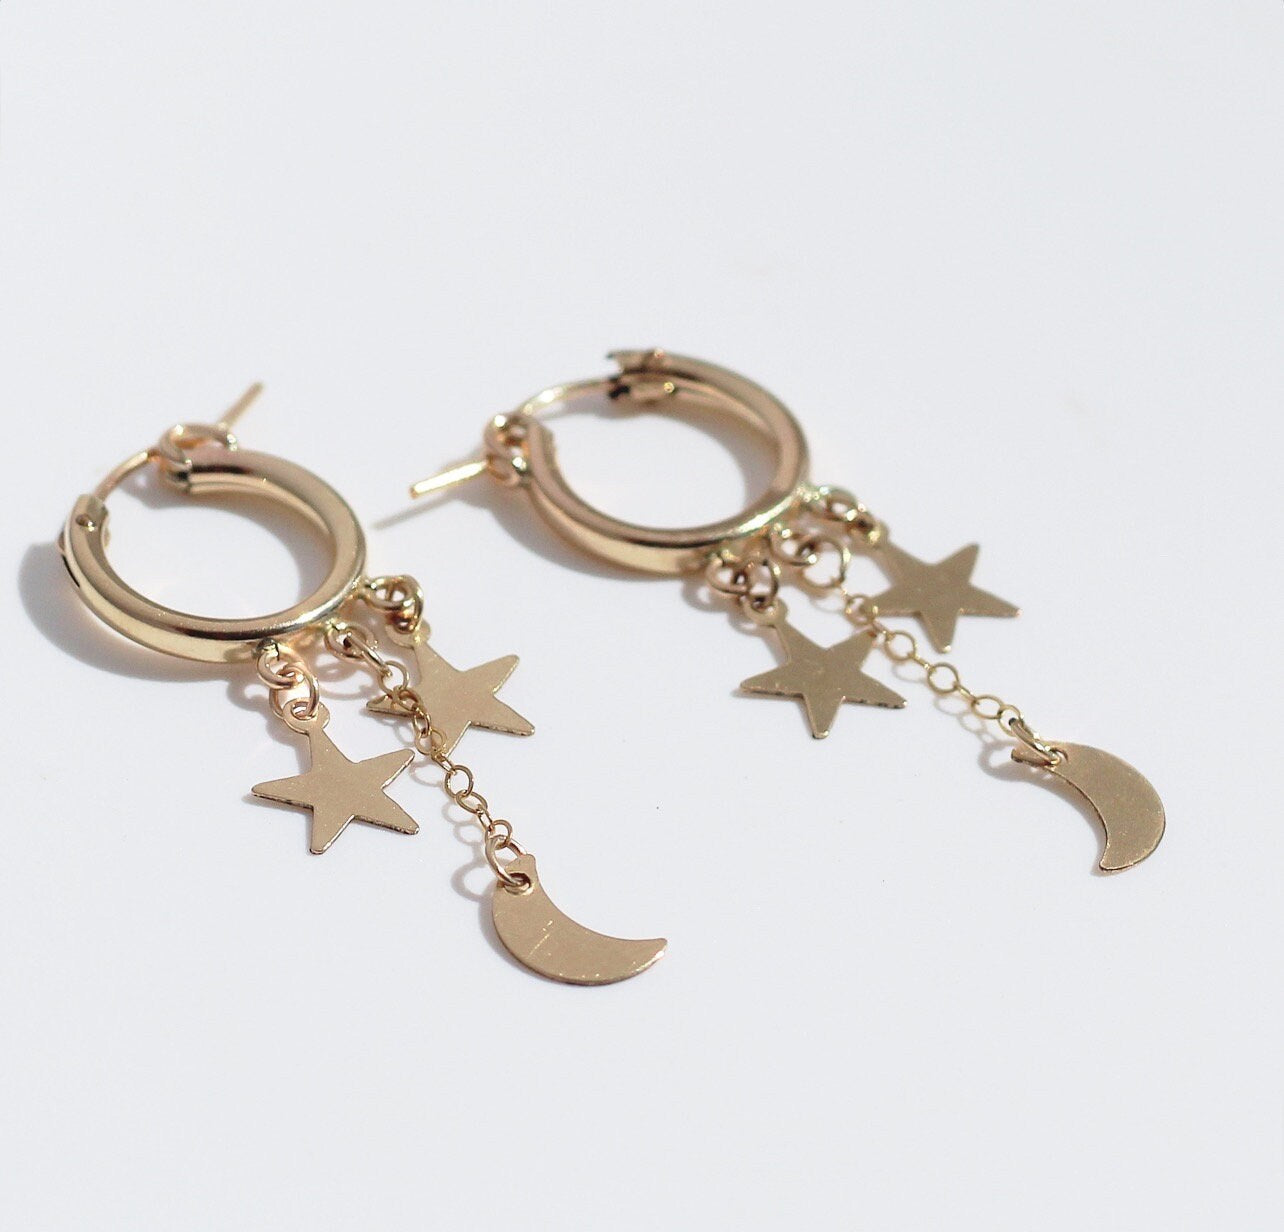 Dainty Celestial Earrings, Delicate Huggie Hoops, Moon and Star Earrings, Delicate Dangle Earrings, Tiny Star Earrings, Gold Filled Earrings